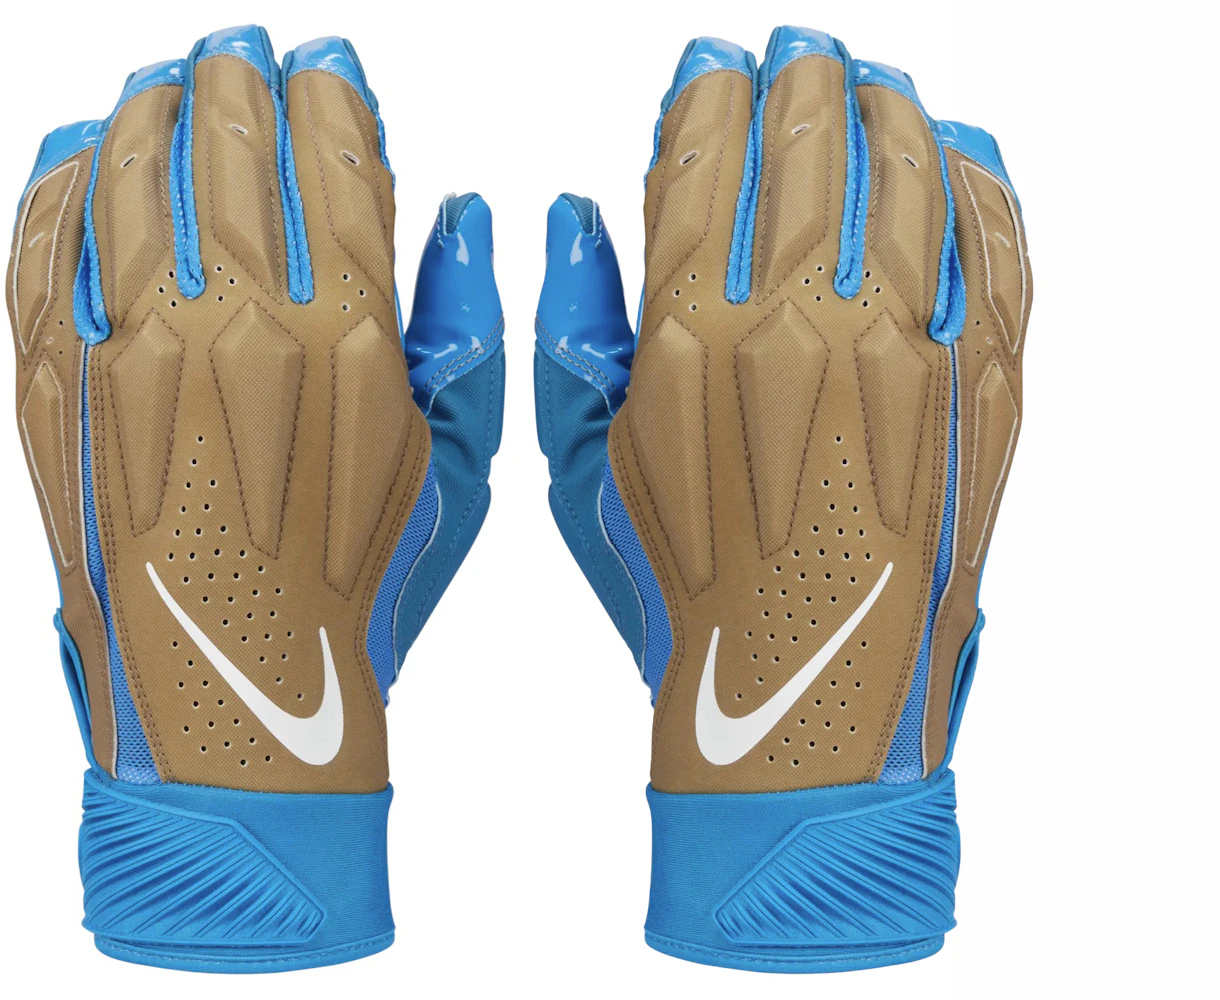 Brand new off-white football gloves - Depop